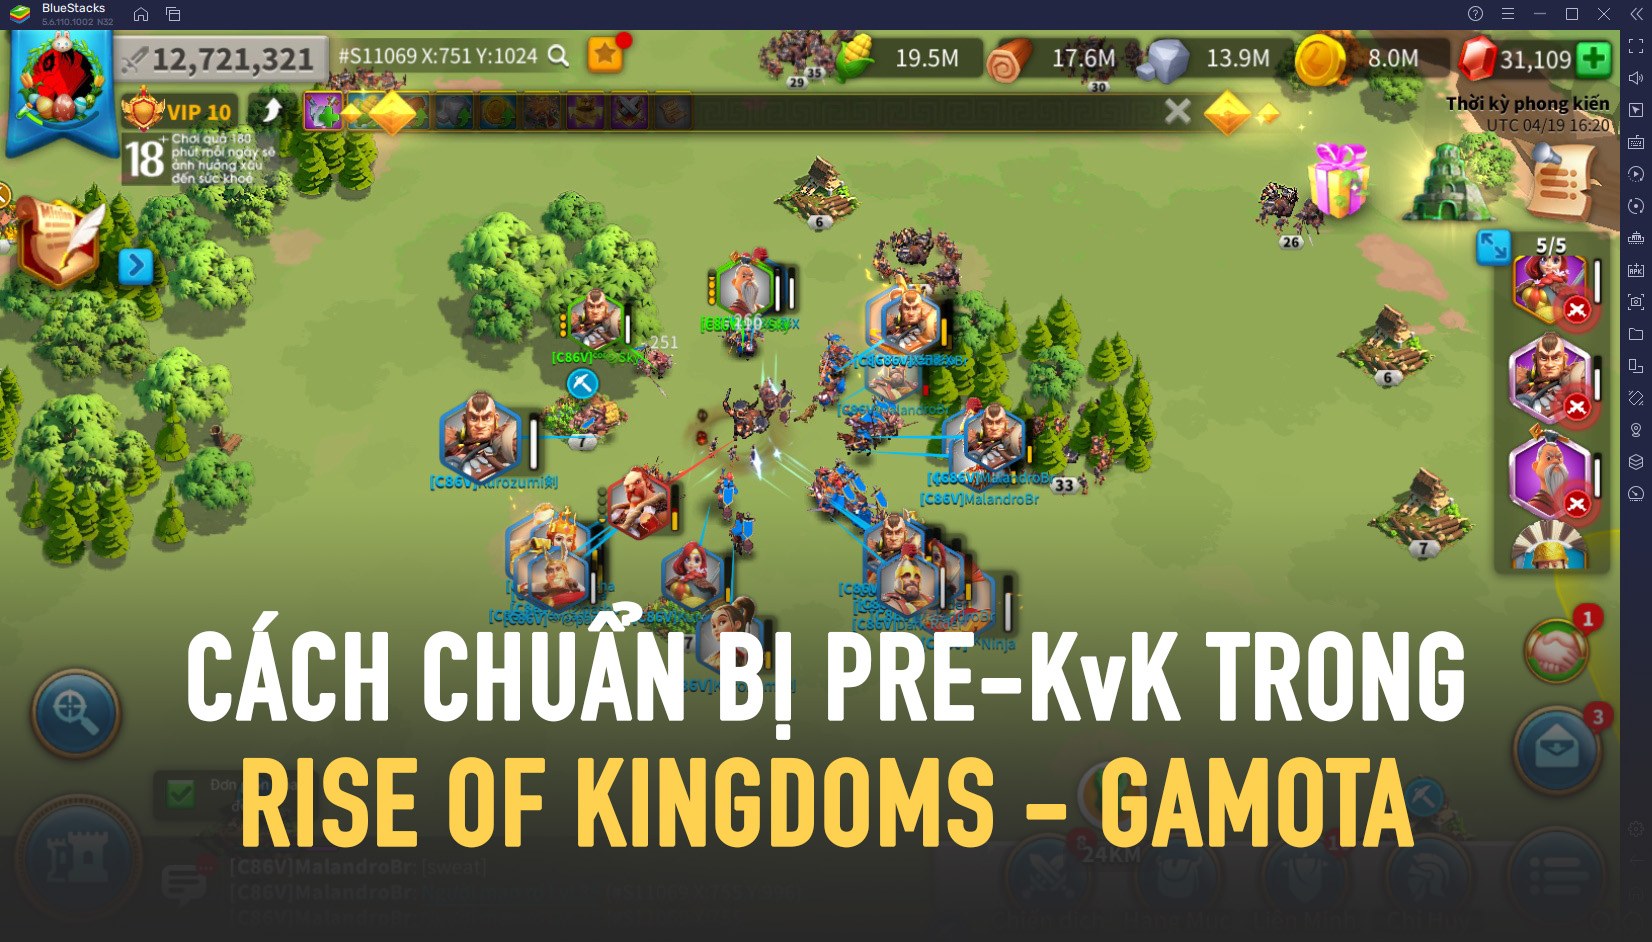 Giai đoạn 3 Pre KvK có ý nghĩa và nhiệm vụ gì trong trò chơi Rise of Kingdoms?